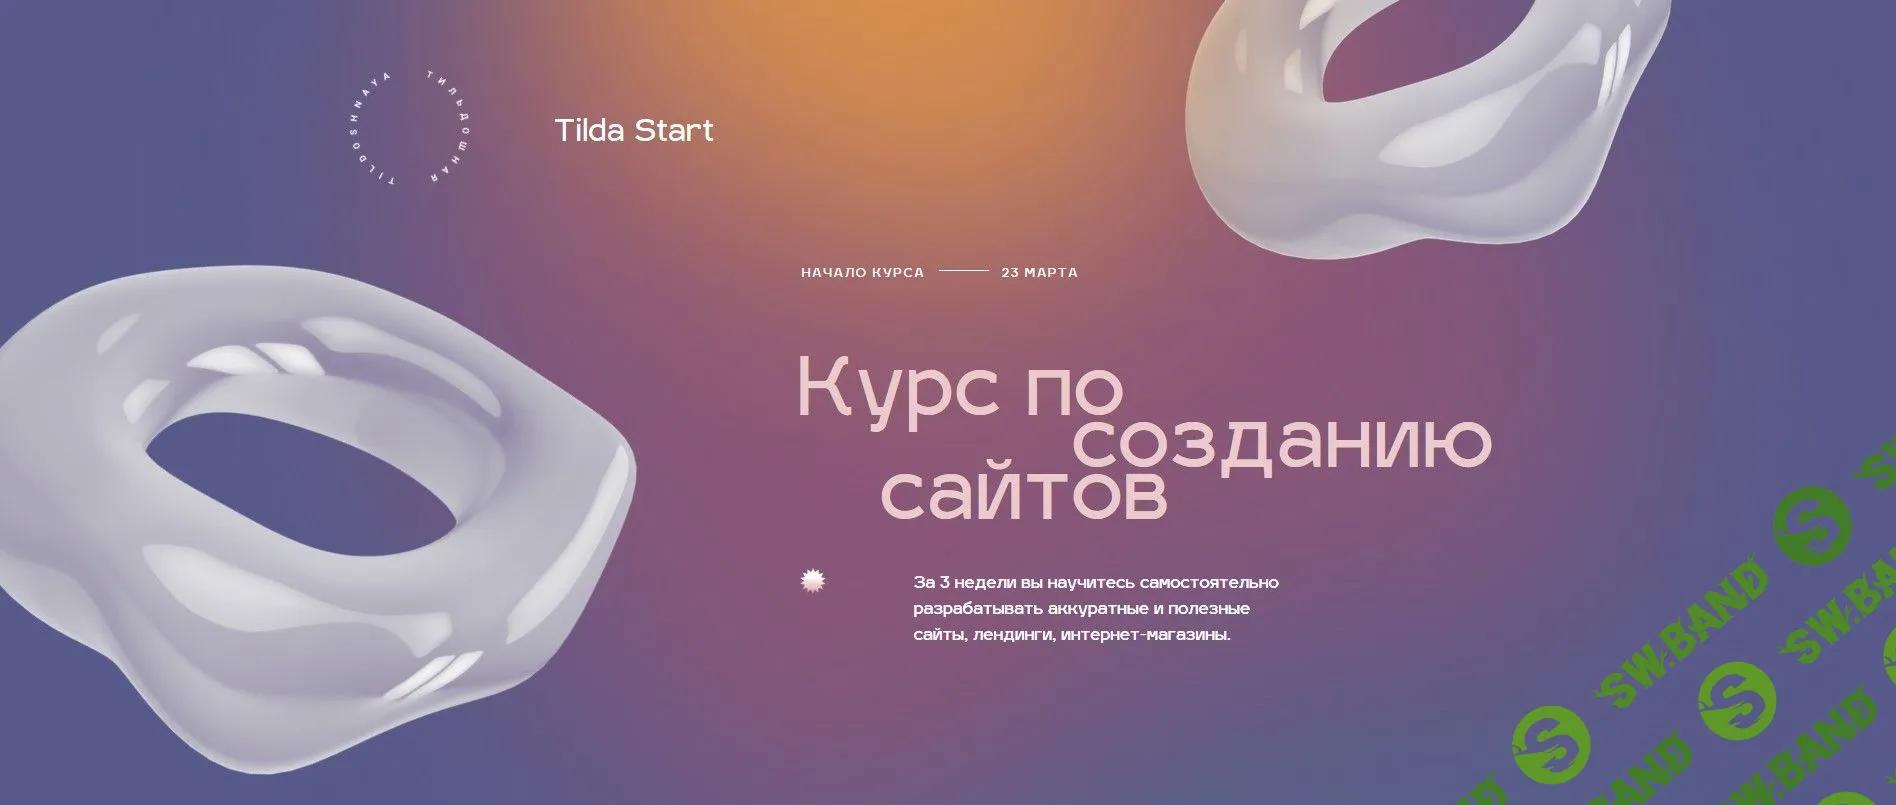 [Максим Ширко] Практический курс по созданию сайтов на Tilda (2020)